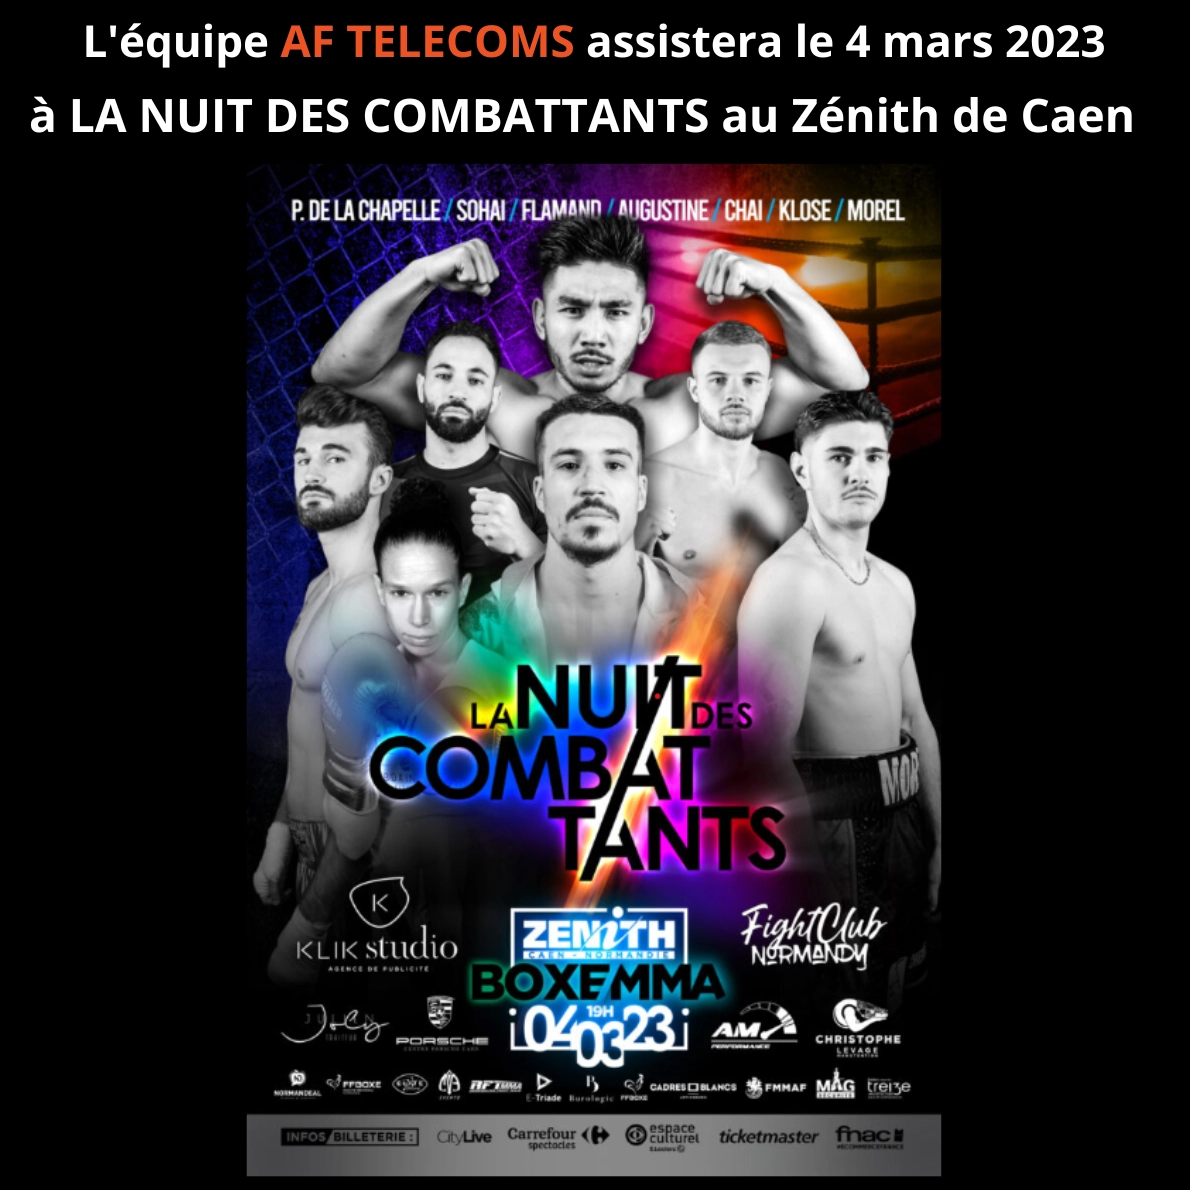 📢 1er EVENEMENT de 2023 - Expert en téléphonie, télécoms, vidéosurveillance dans le Calvados